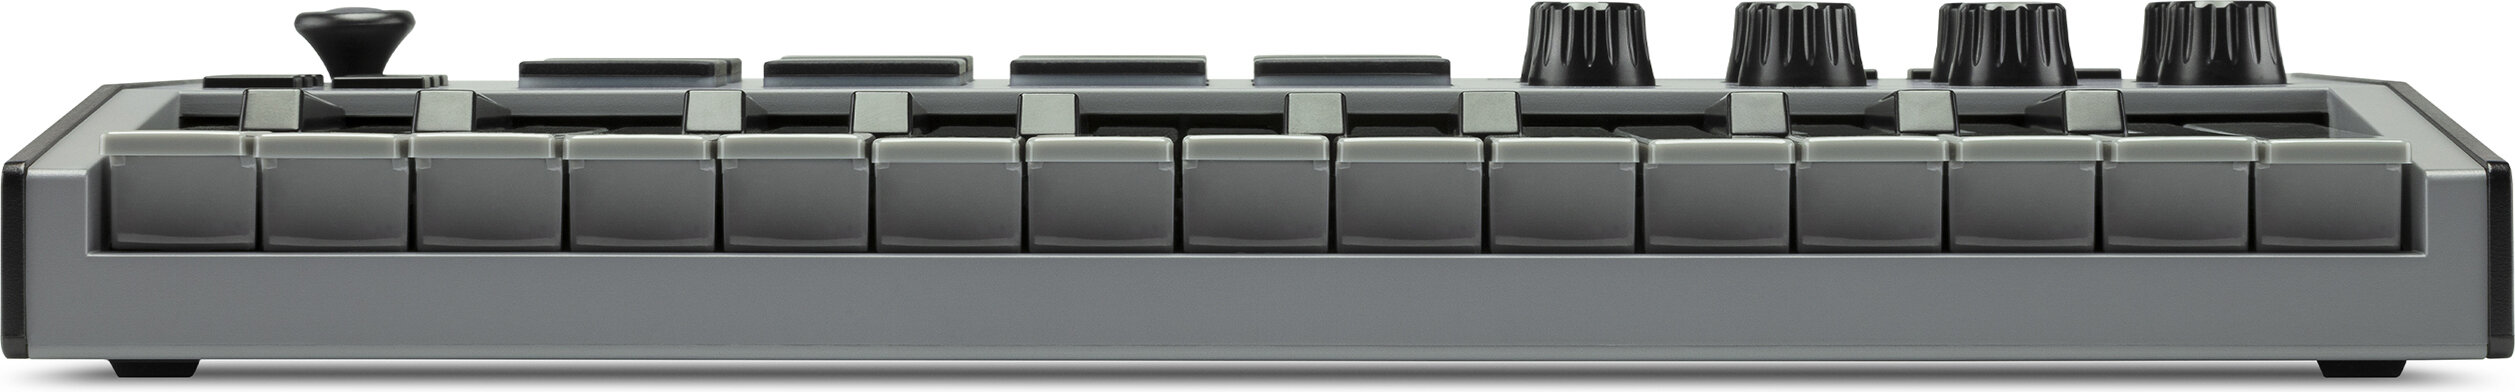 楽天市場】AKAI Professional MPK mini Special Edition Grey 25鍵 USB